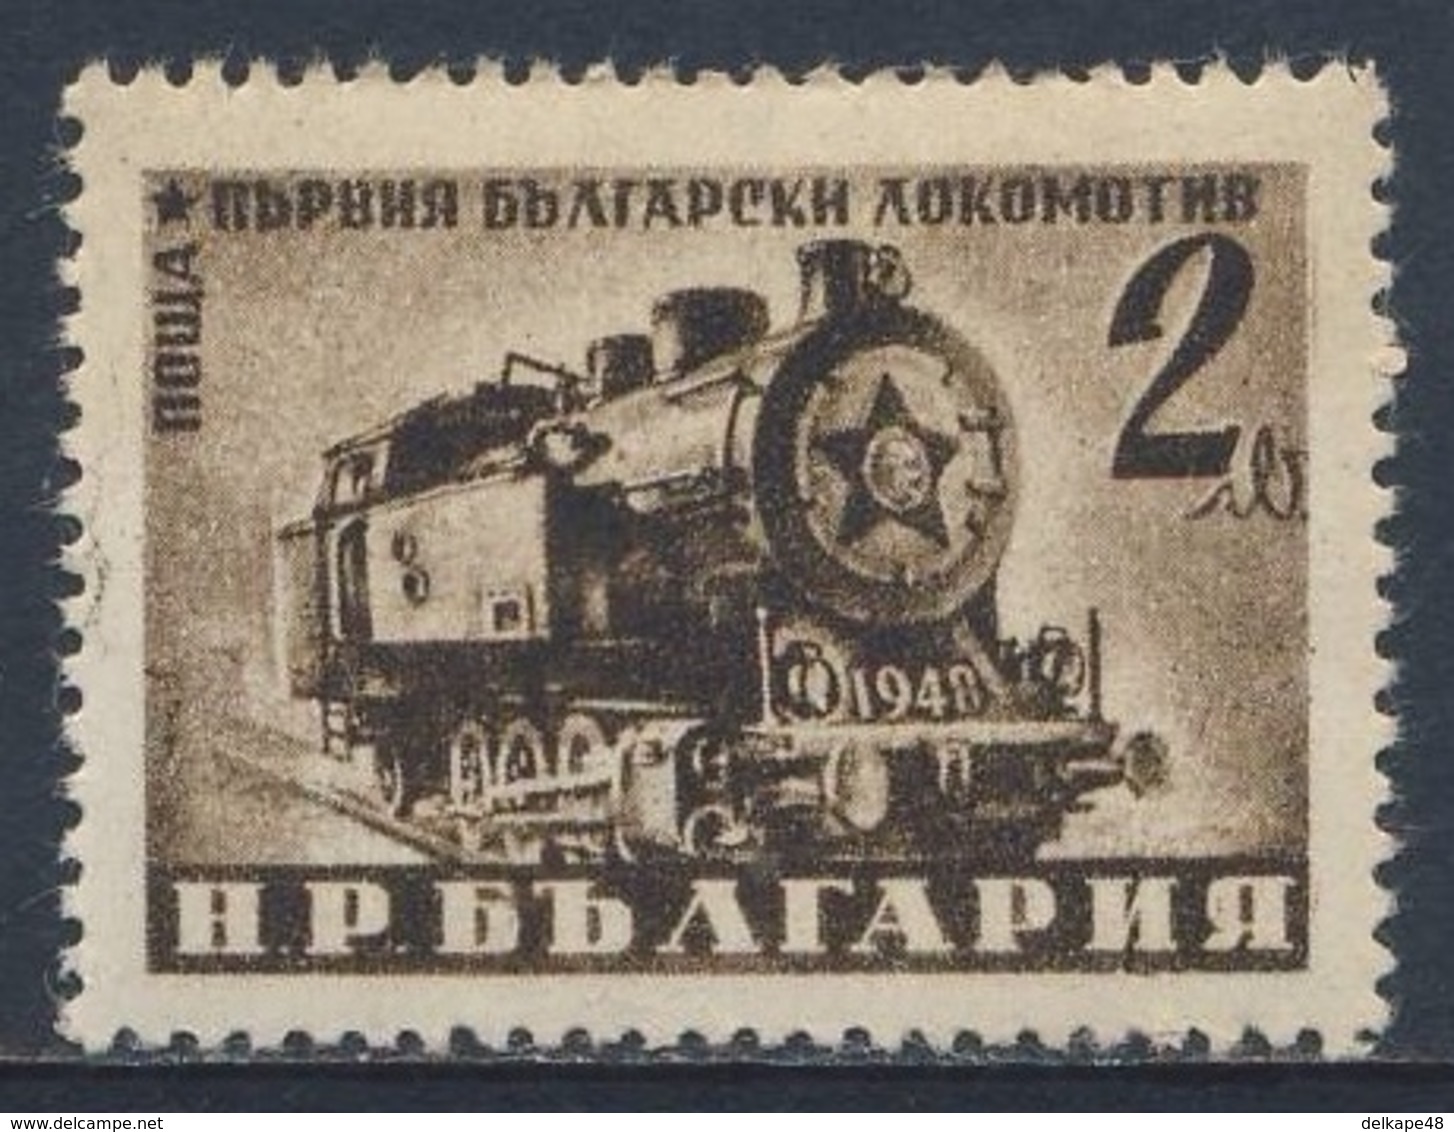 Bulgaria Bulgarien 1950 Mi 726 A YT 633 SG 774 A ** Class 48 Steam Shunting Locomotive / Lokomotive - Volkswirtschaft - Treinen